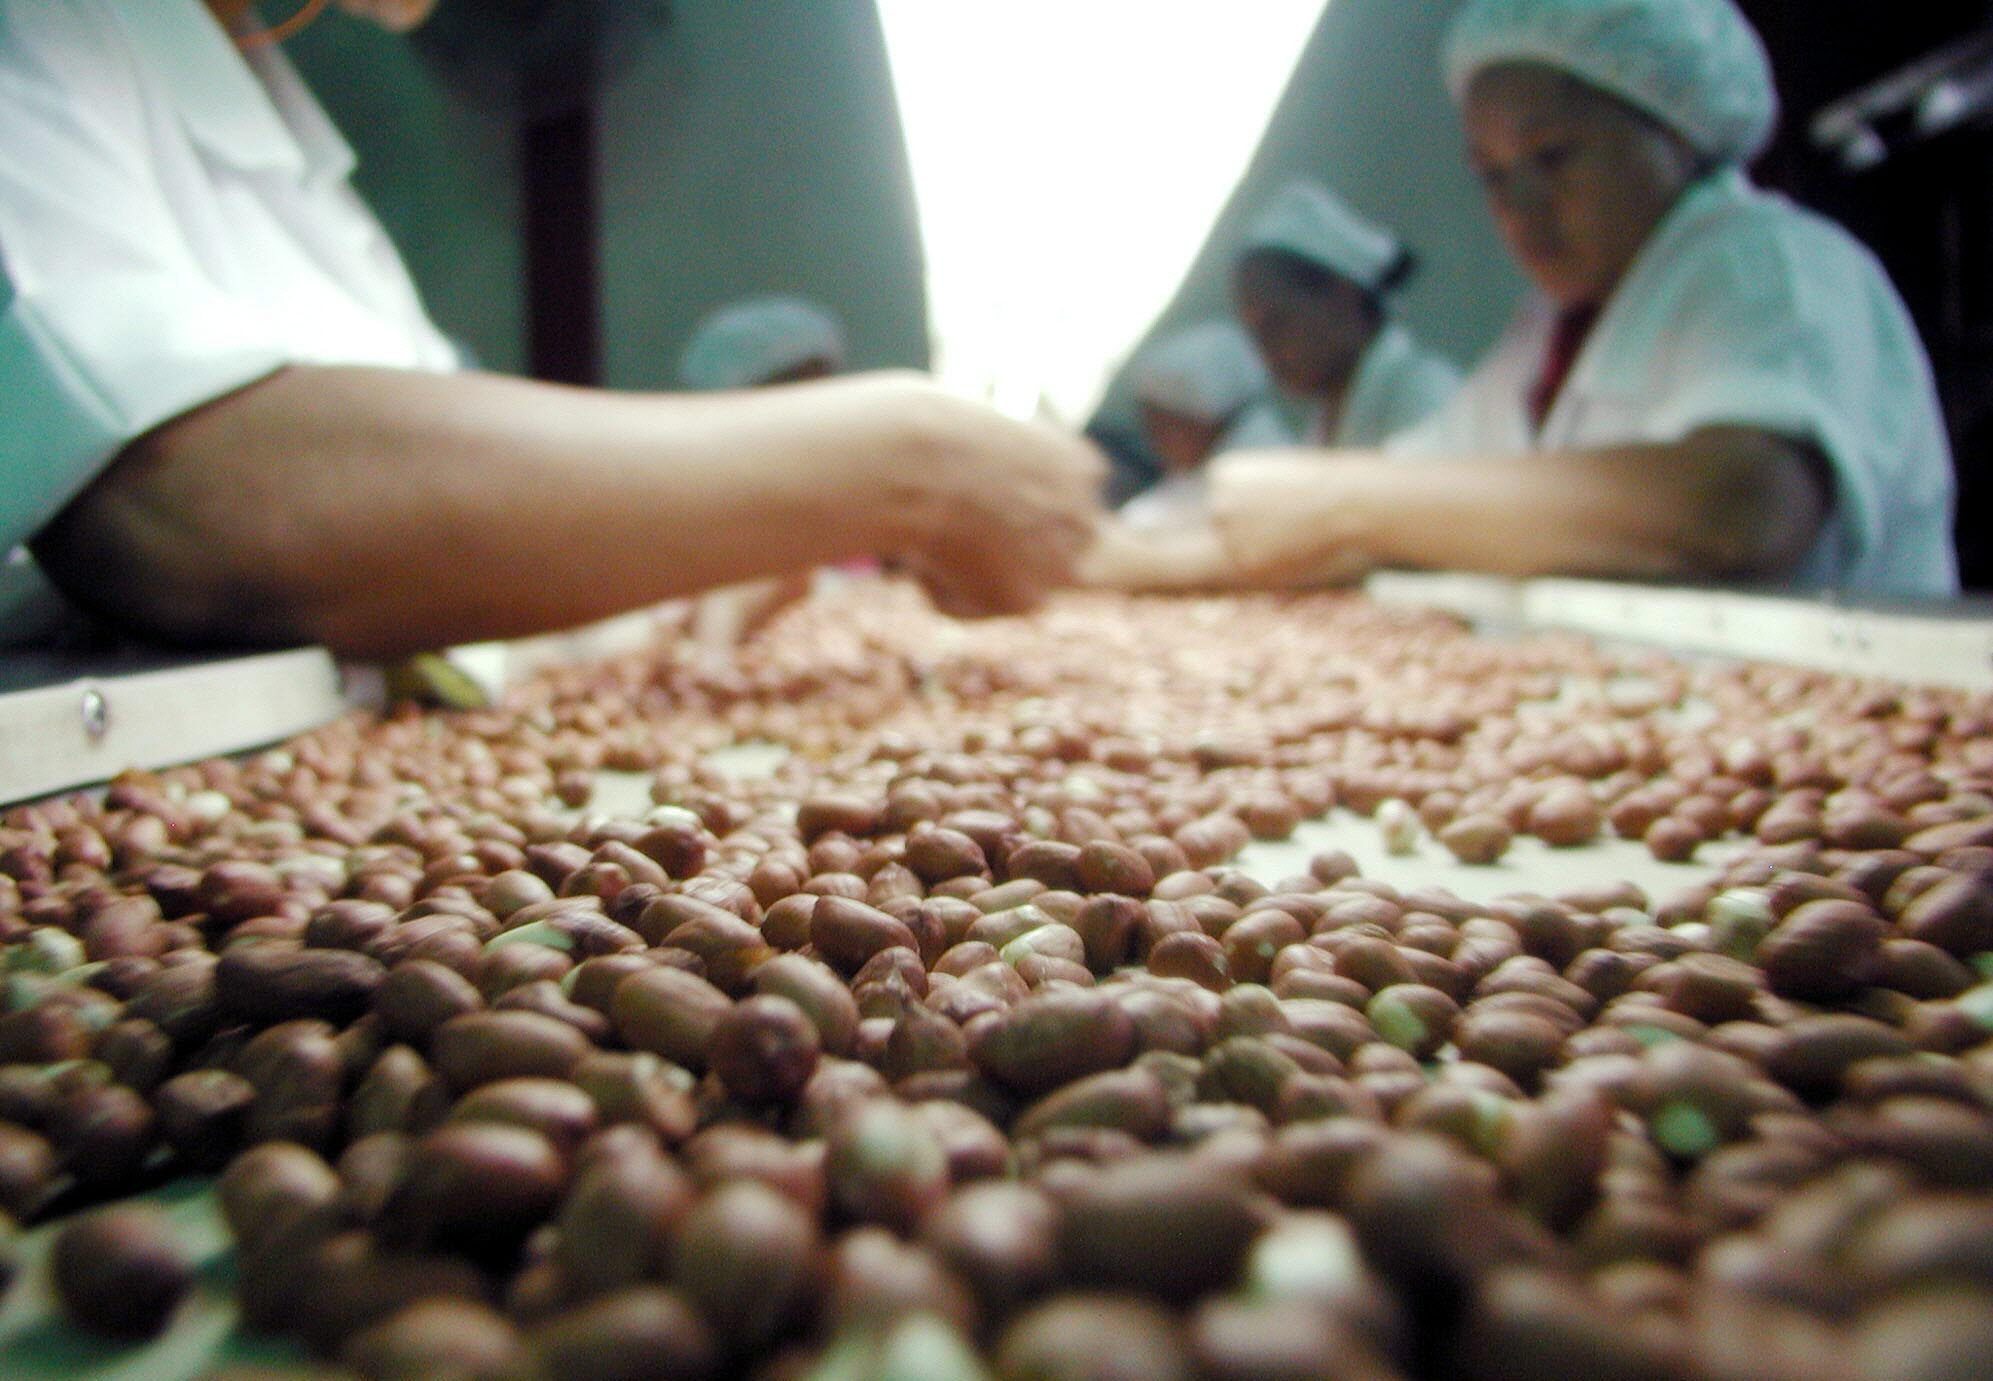 Tratamiento industrial de maní (cacahuetes) en Nicaragua.